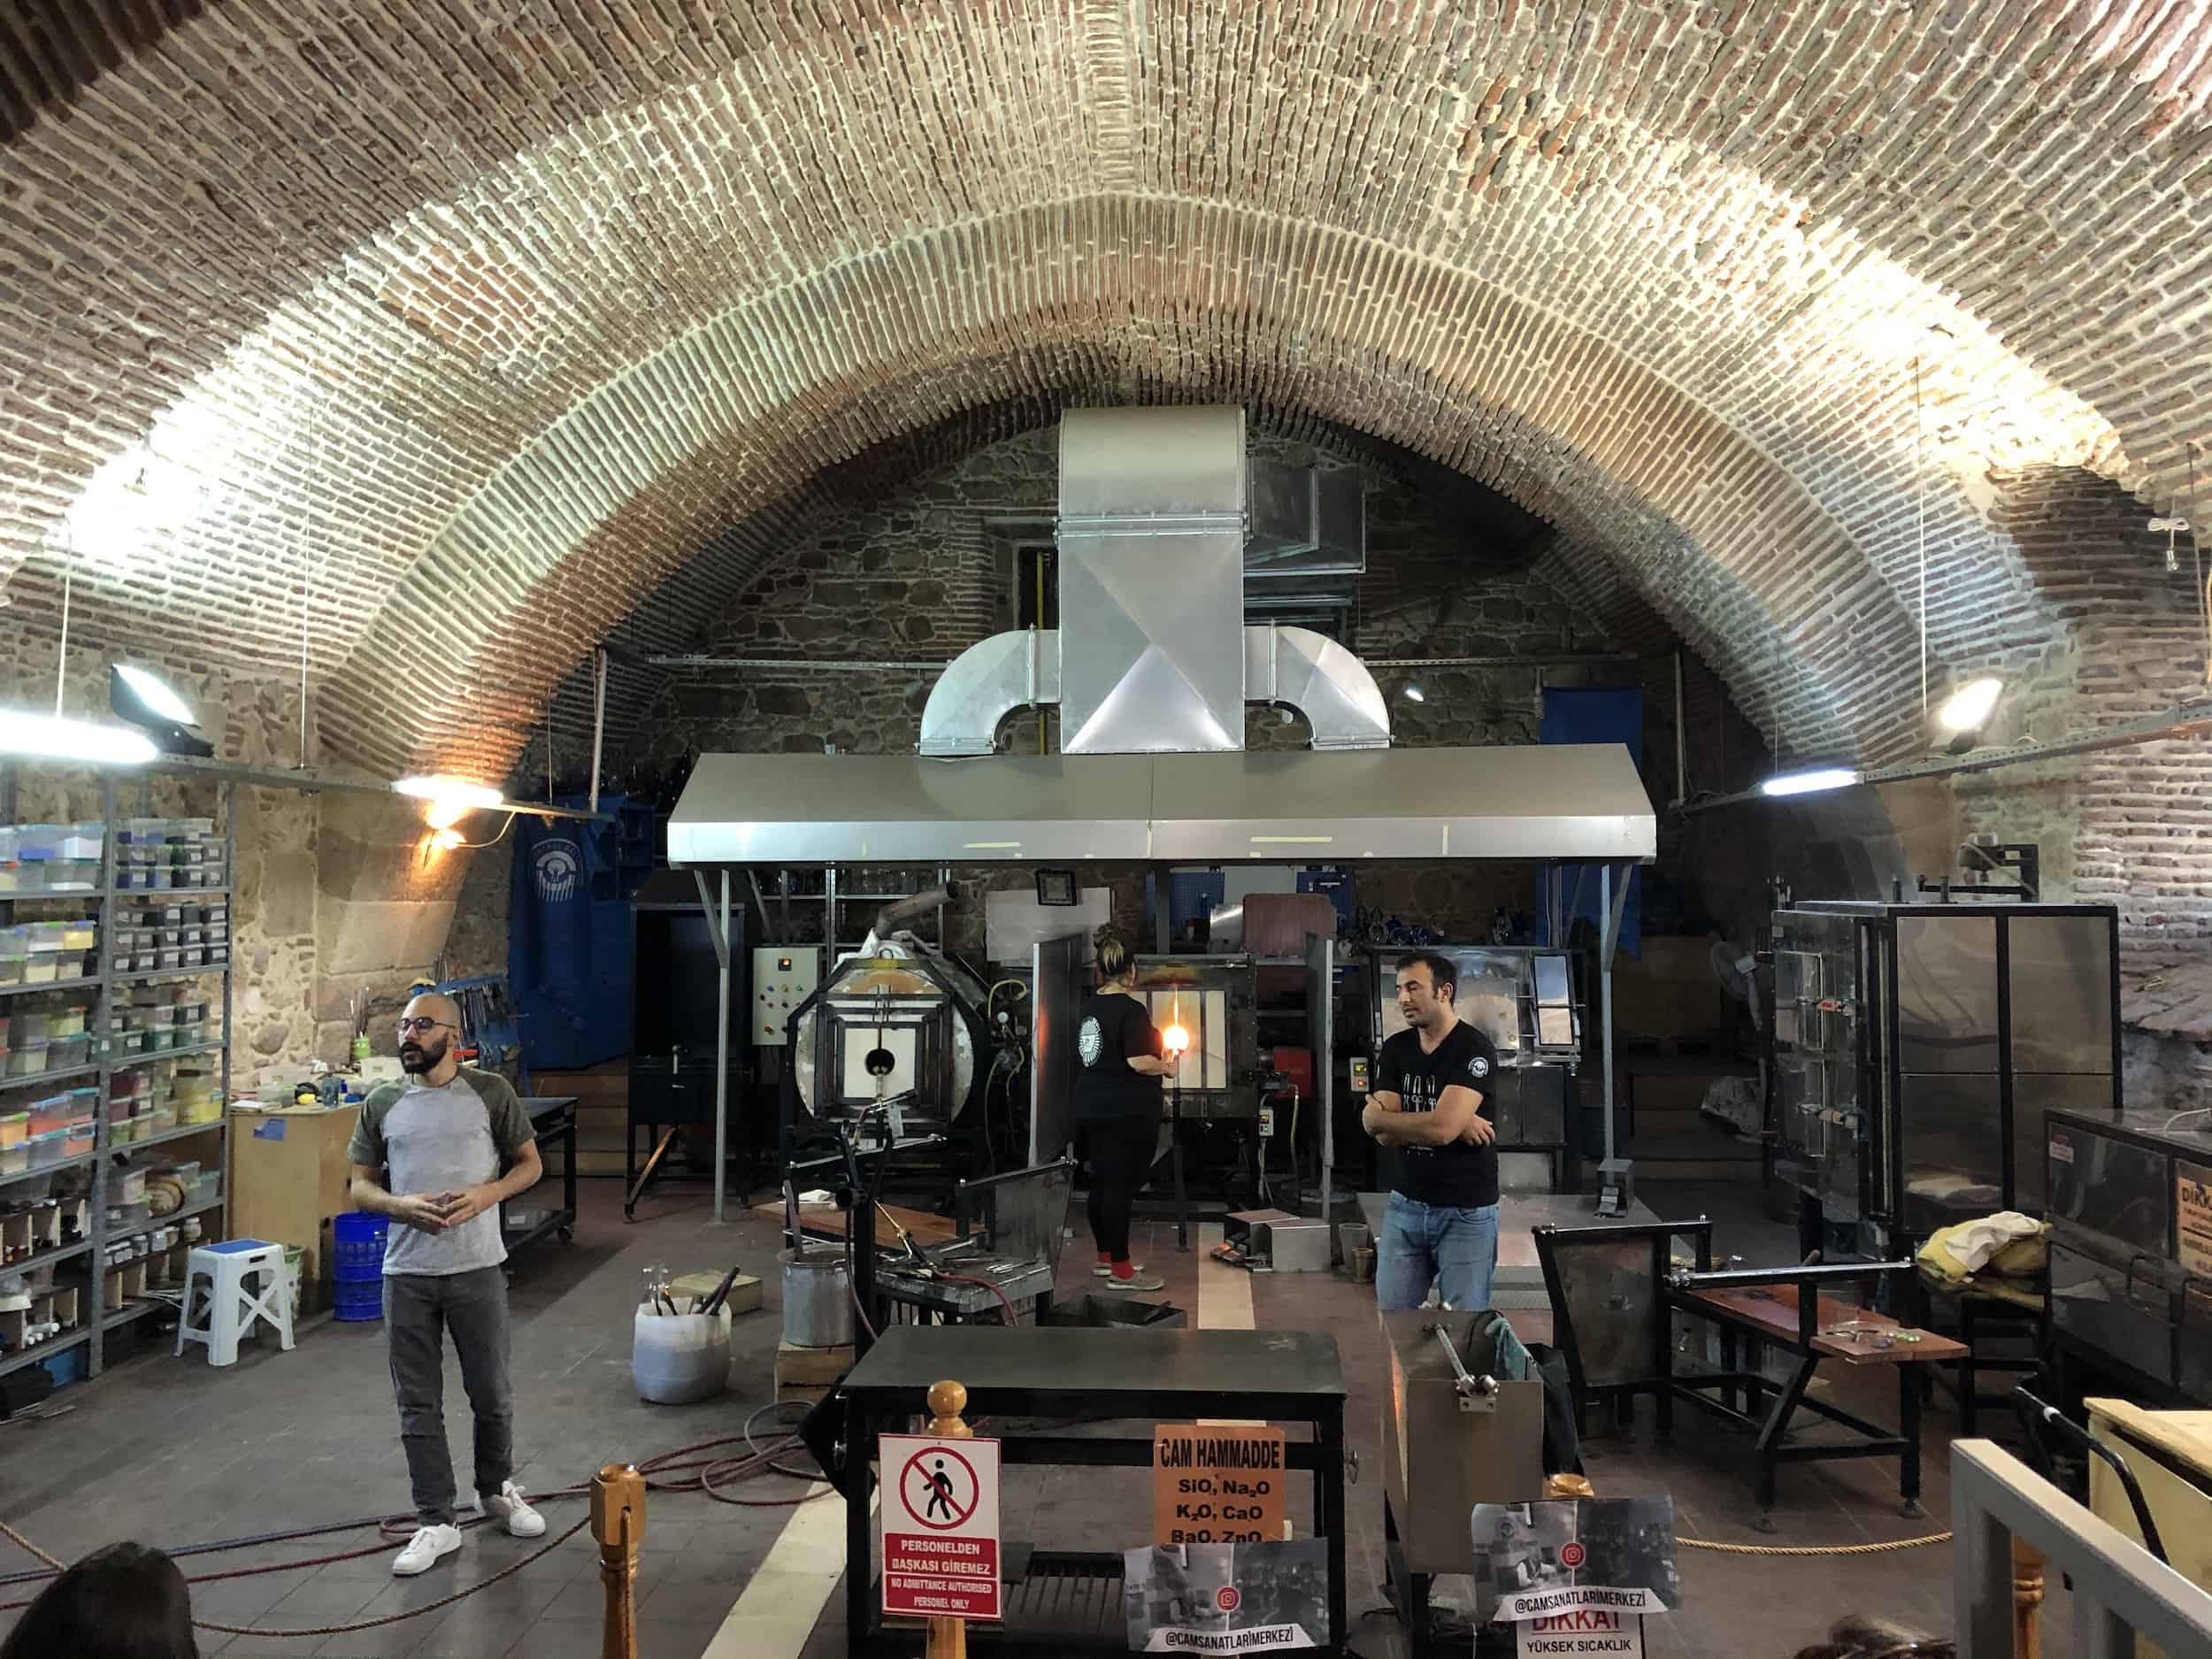 Hot glass blowing studio at the Kurşunlu Complex in Odunpazarı, Eskişehir, Turkey